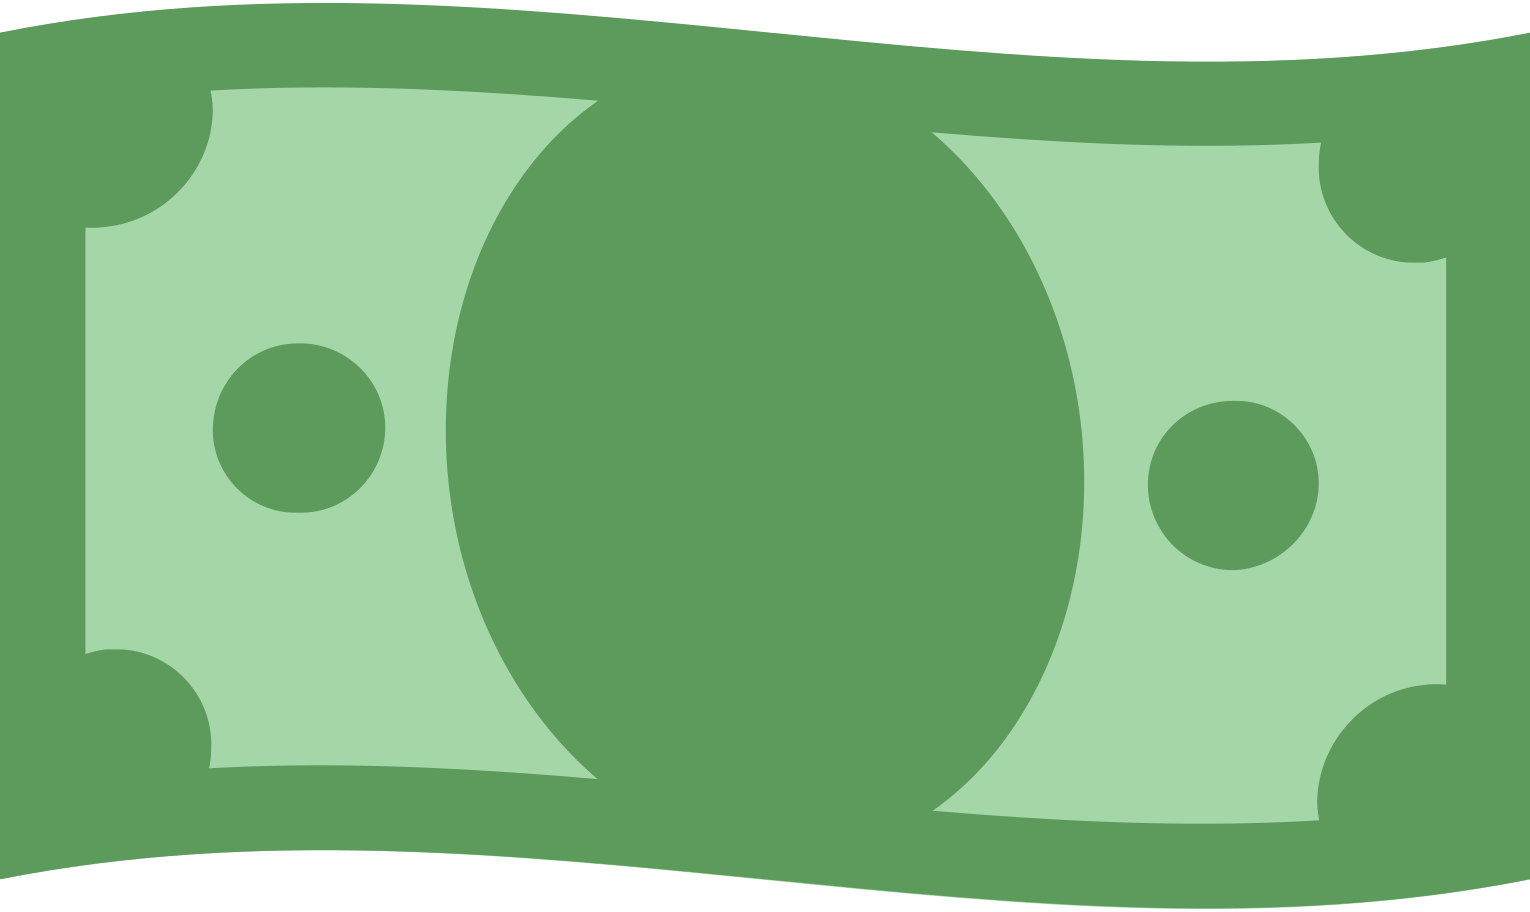 money Illustration in PNG, SVG